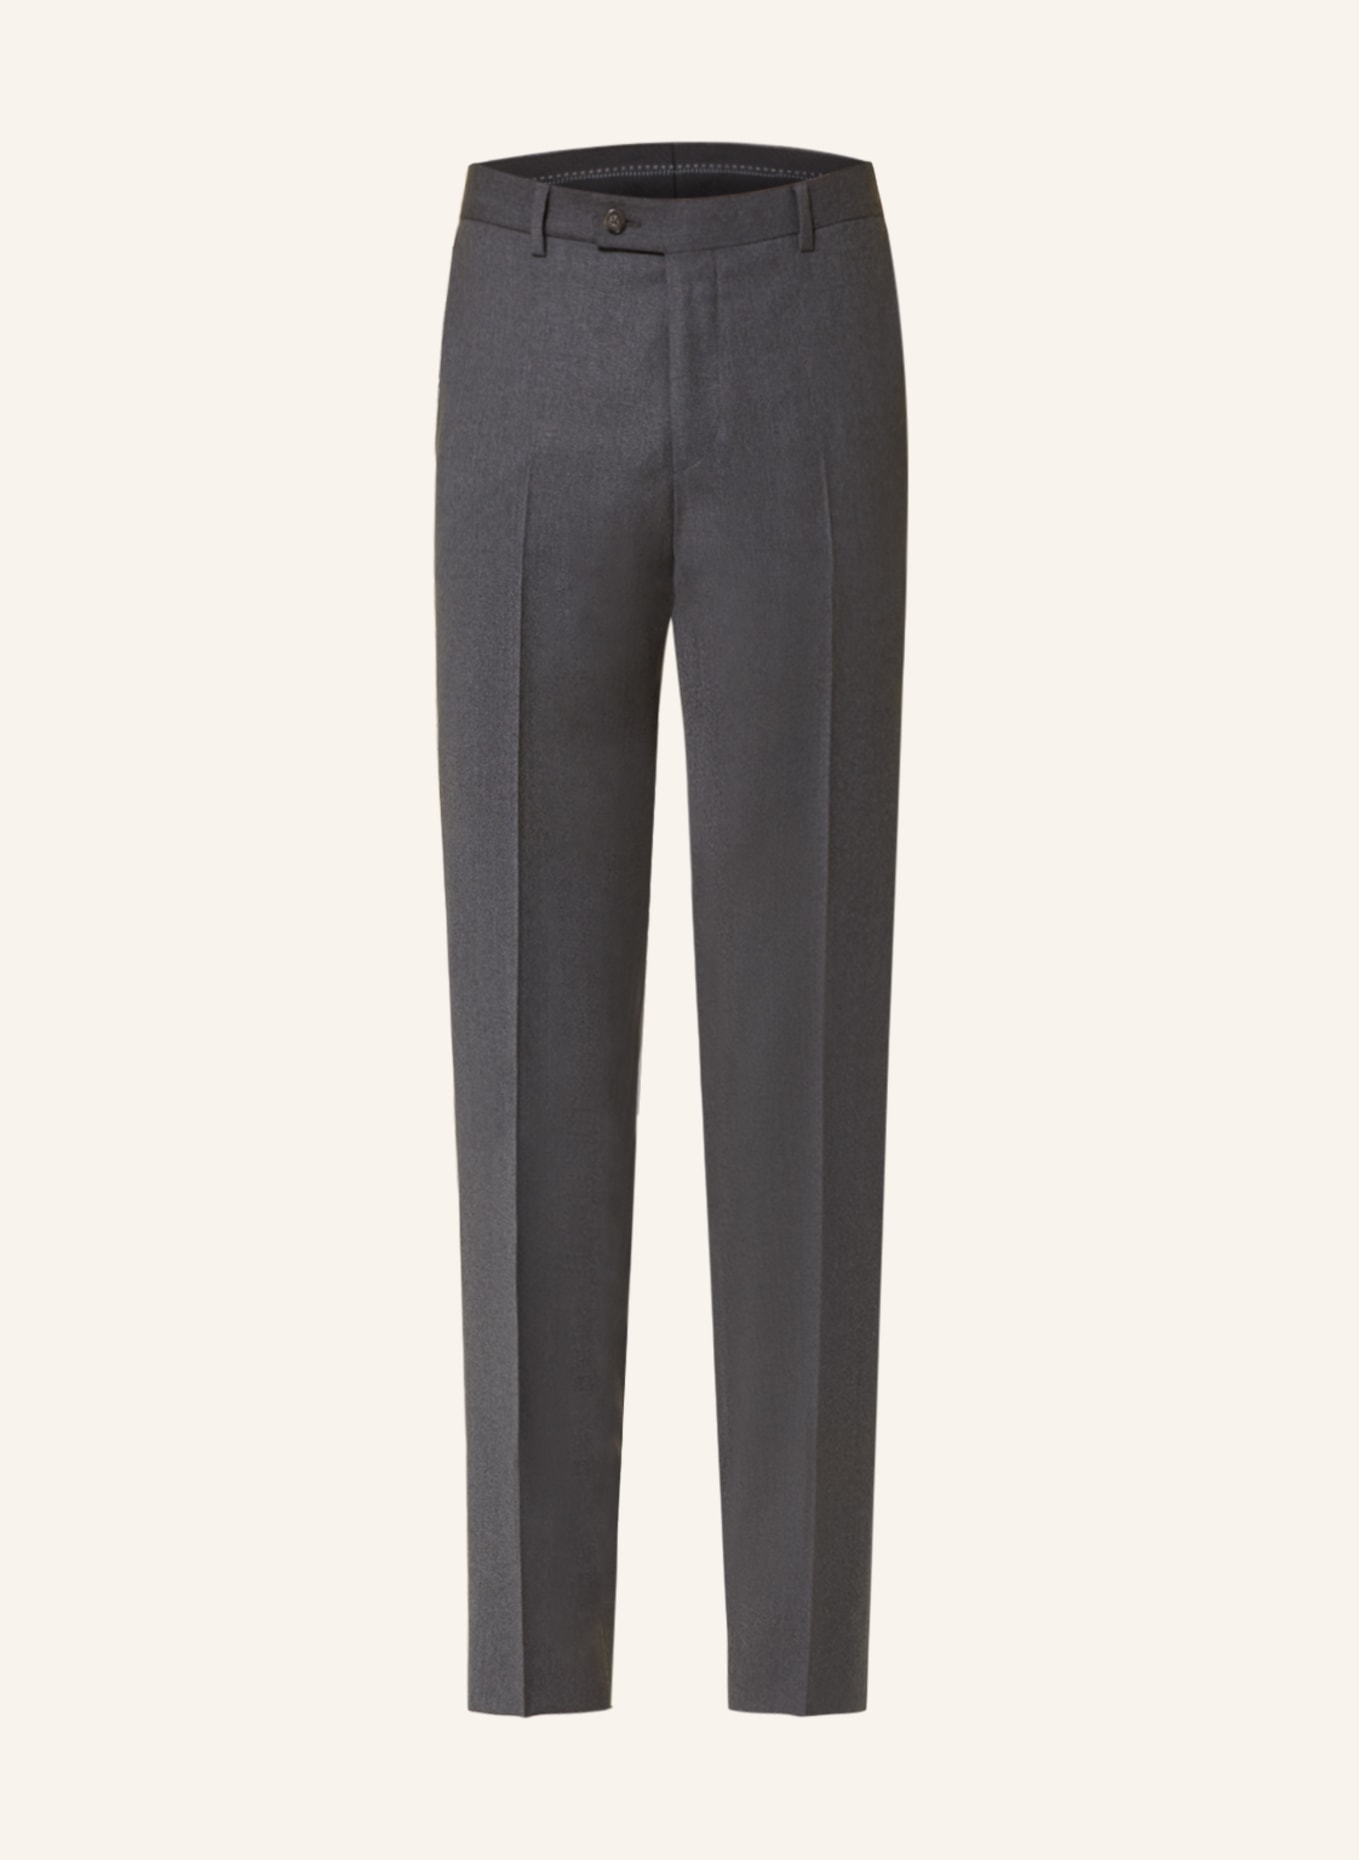 SAND COPENHAGEN Suit trousers CRAIG modern fit, Color: 170 Light Grey (Image 1)